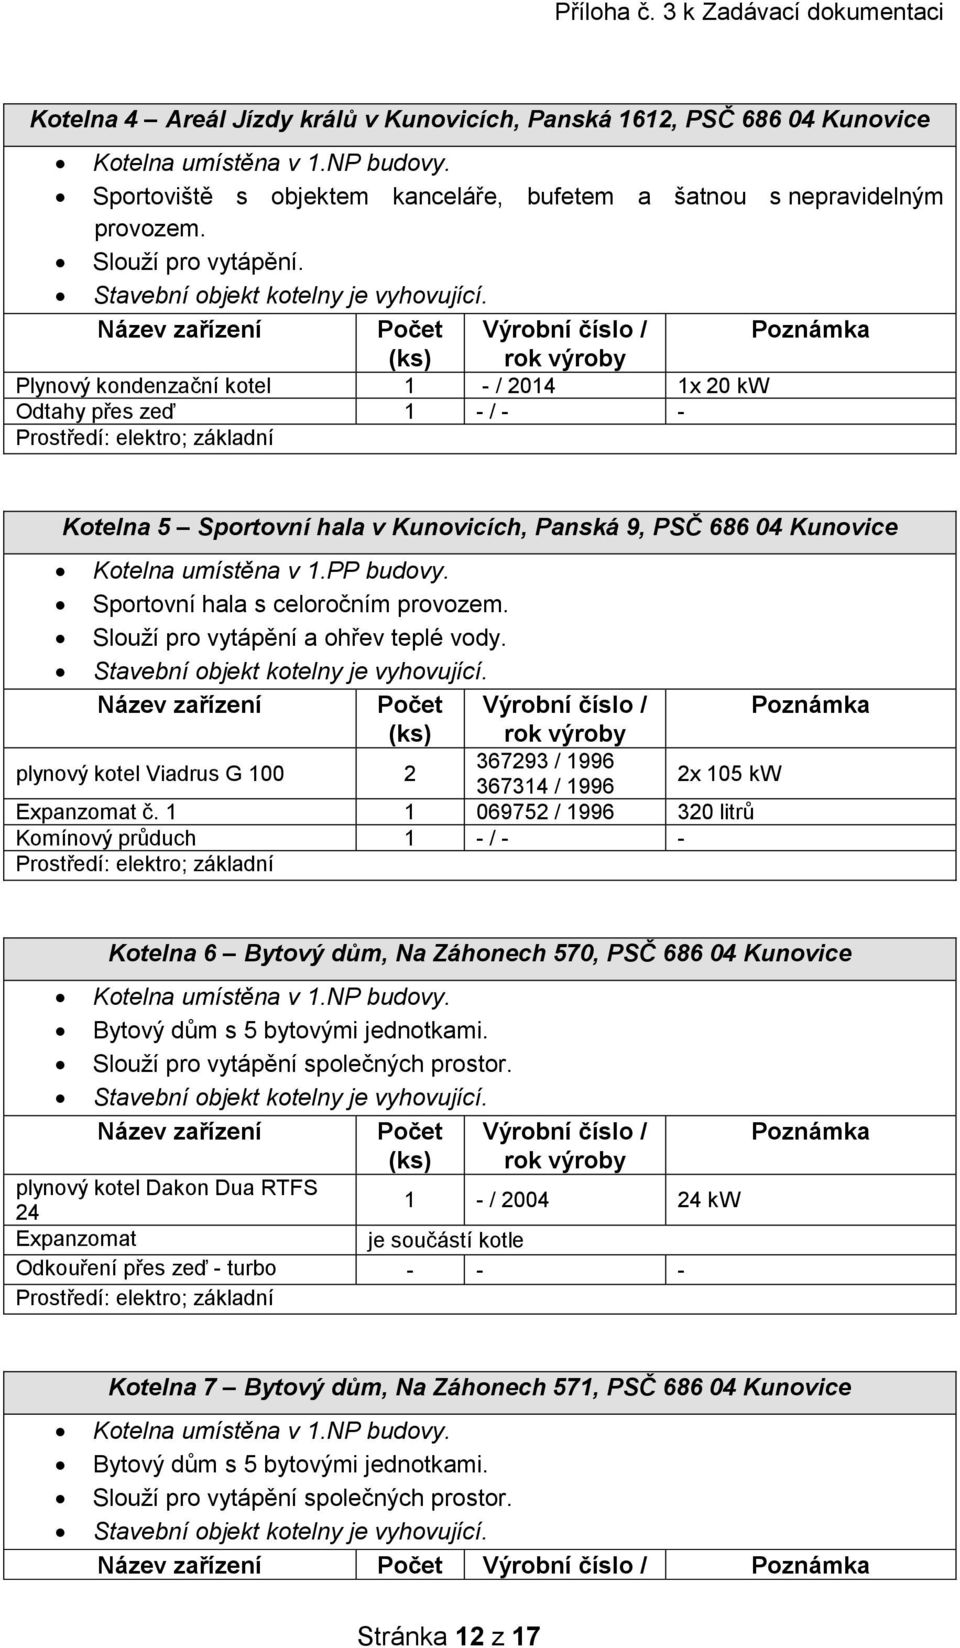 Plynový kondenzační kotel 1 - / 2014 1x 20 kw Odtahy přes zeď 1 - / - - Kotelna 5 Sportovní hala v Kunovicích, Panská 9, PSČ 686 04 Kunovice Kotelna umístěna v 1.PP budovy.